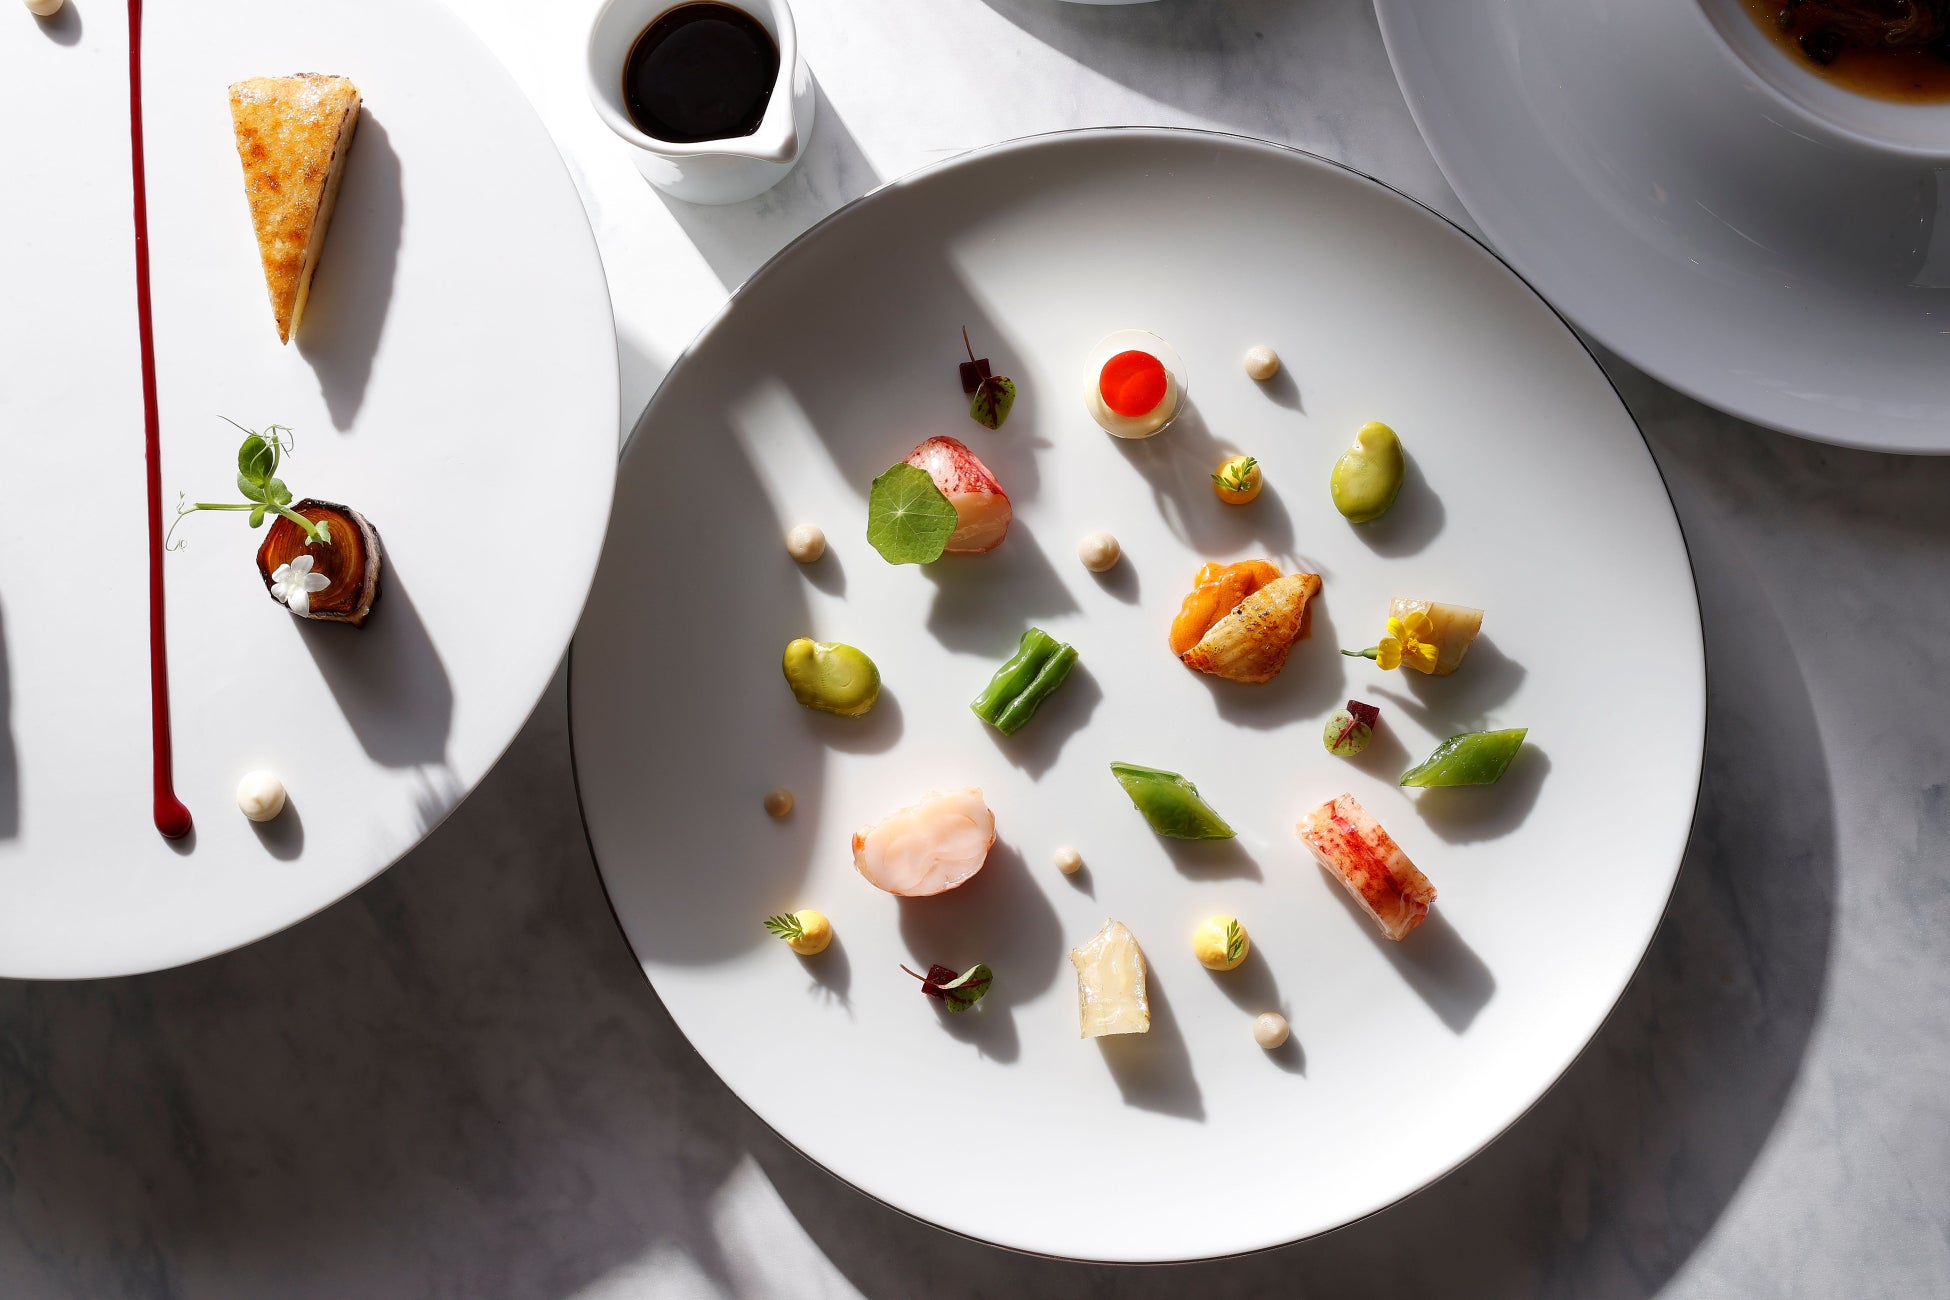 ザ・カハラ・ホテル＆リゾート 横浜　イタリア料理 RISTORANTE OZIOから、クラシカルなフランス料理の技を深化させるロゼシャンパンと共に、春の訪れを感じる彩り豊かな二皿